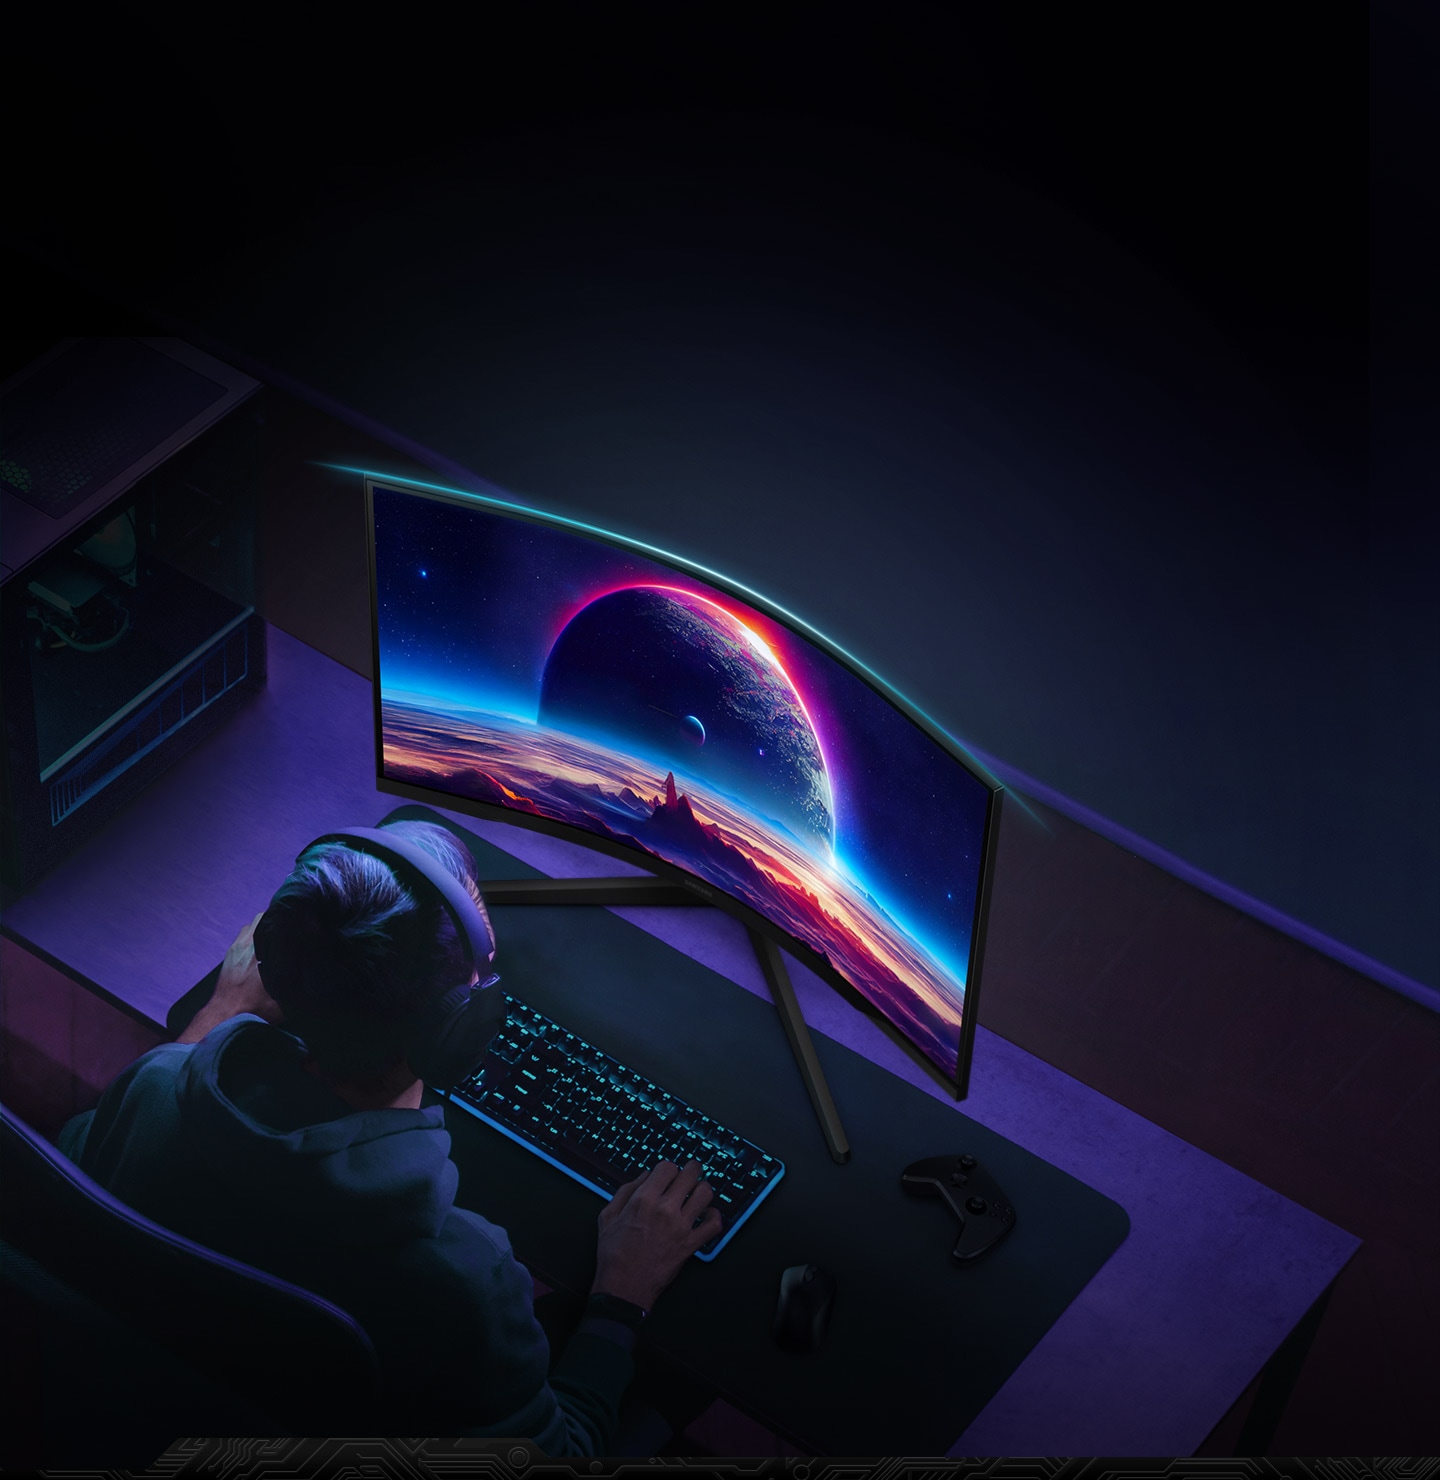 Ein Mann sitzt vor einem Odyssey G5-Monitor bei gedämpftem Licht und benutzt Maus und Tastatur, während er Kopfhörer trägt. Ein blaues Licht auf der Oberseite des Rahmens hebt die Krümmung des Monitors hervor.